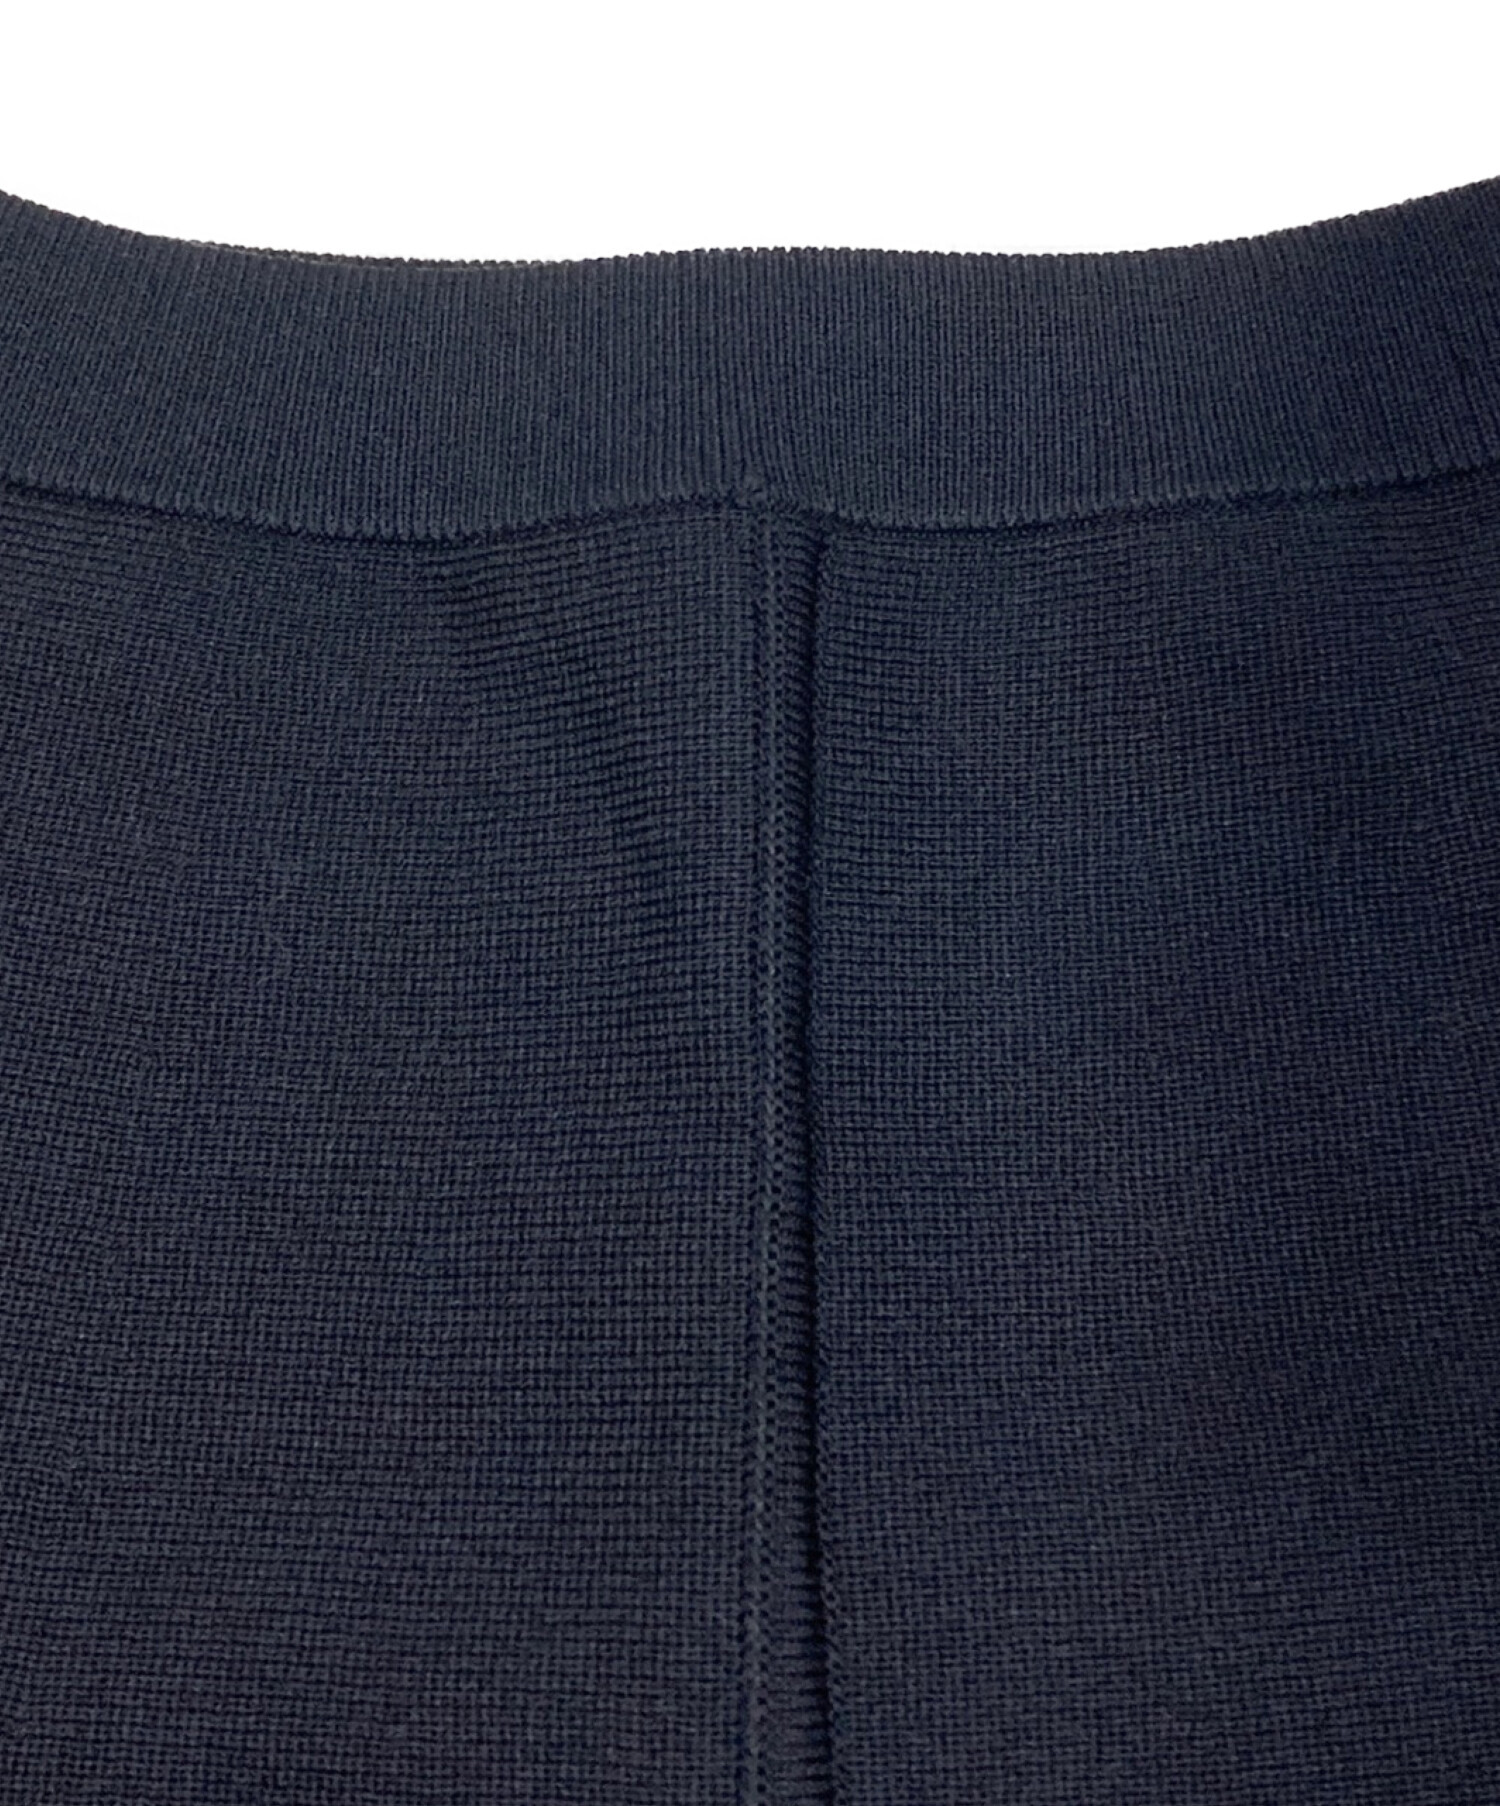 L'Appartement (アパルトモン) Knit Flare Skirt ブラック サイズ:34